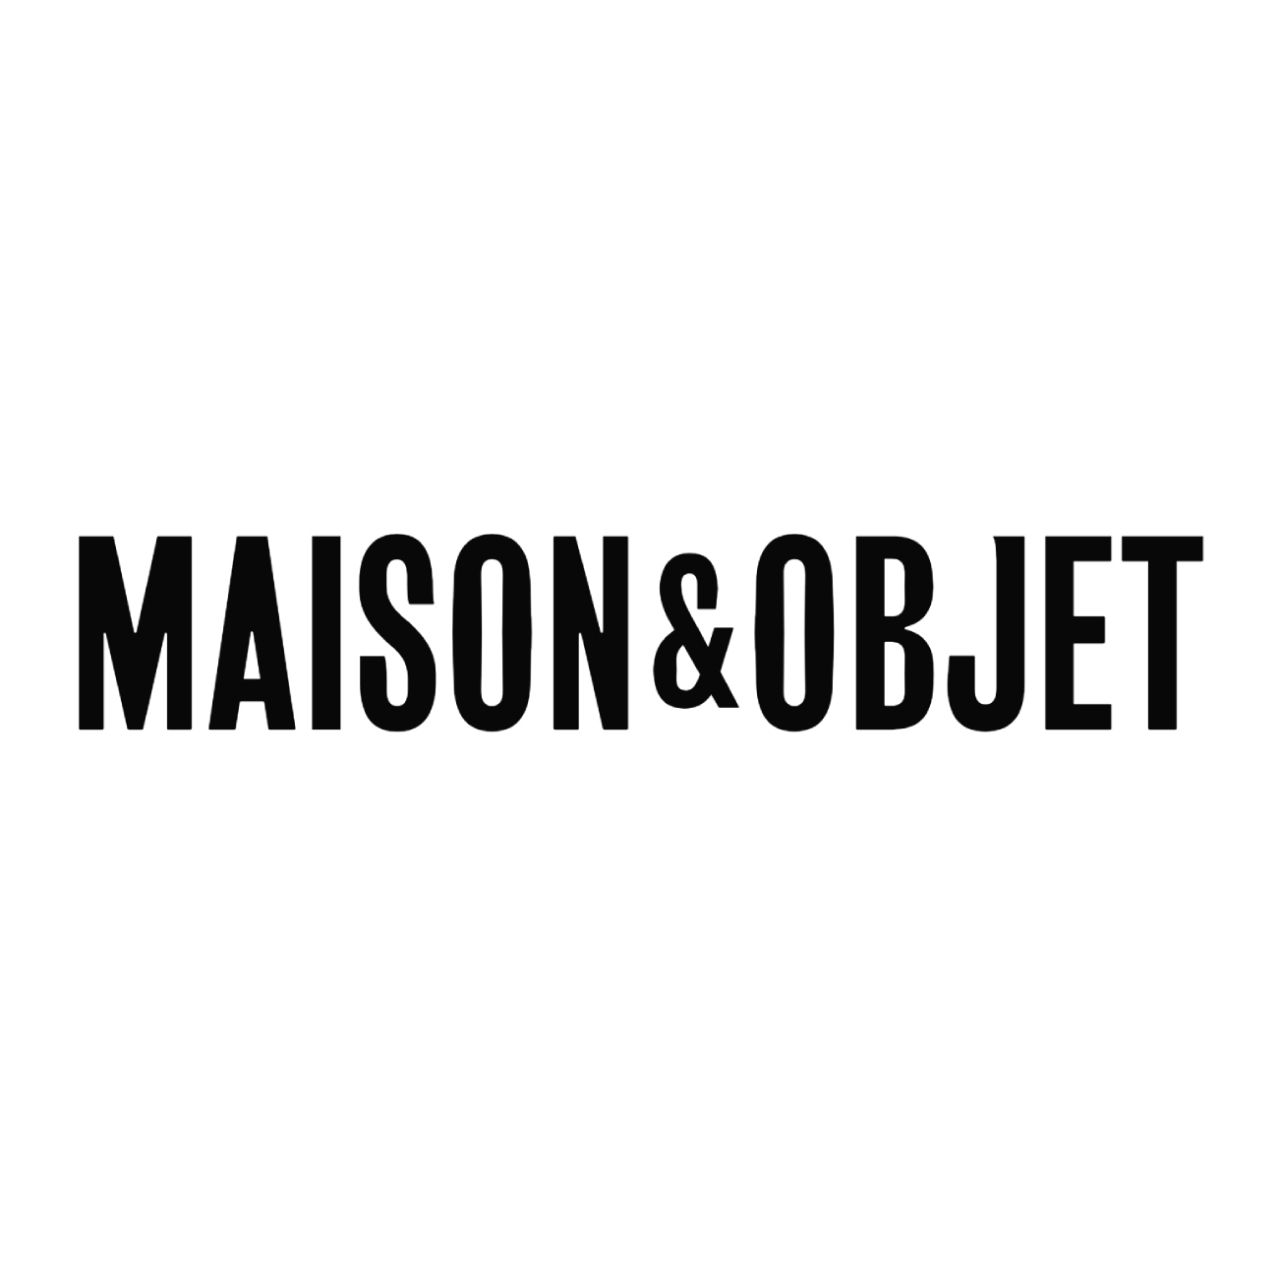 Maison & Objet Exhibition - ASAP Athens